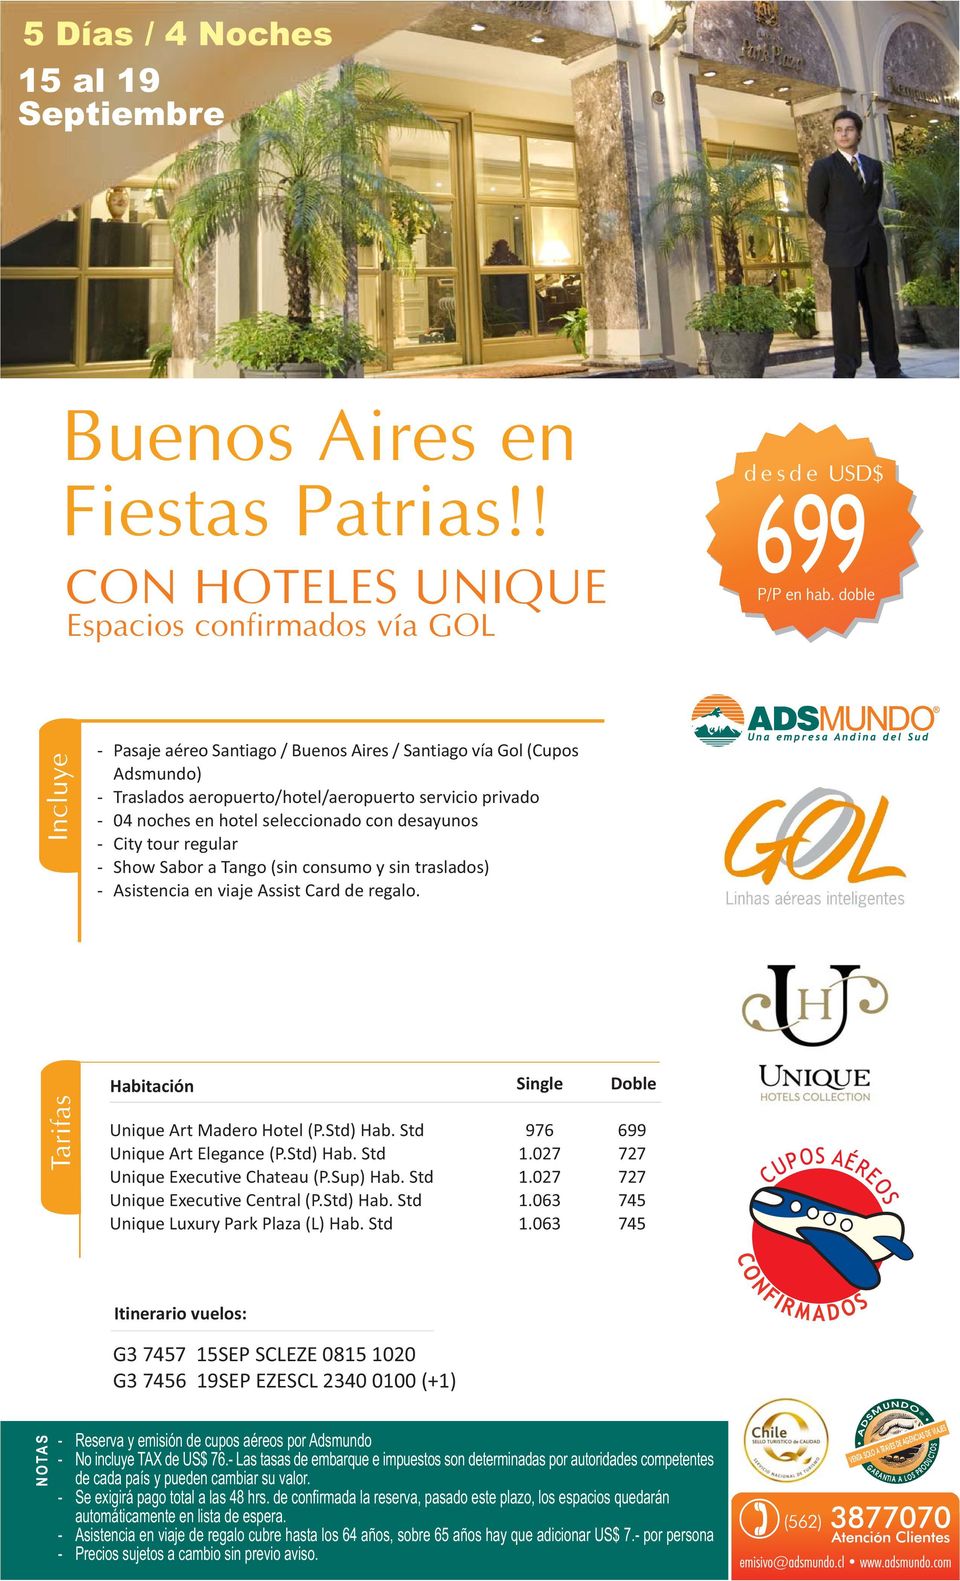 hotel seleccionado con desayunos - City tour regular - Show Sabor a Tango (sin consumo y sin traslados) Unique rt Madero Hotel (P.Std) Hab. Std 976 699 Unique rt Elegance (P.Std) Hab. Std 1.